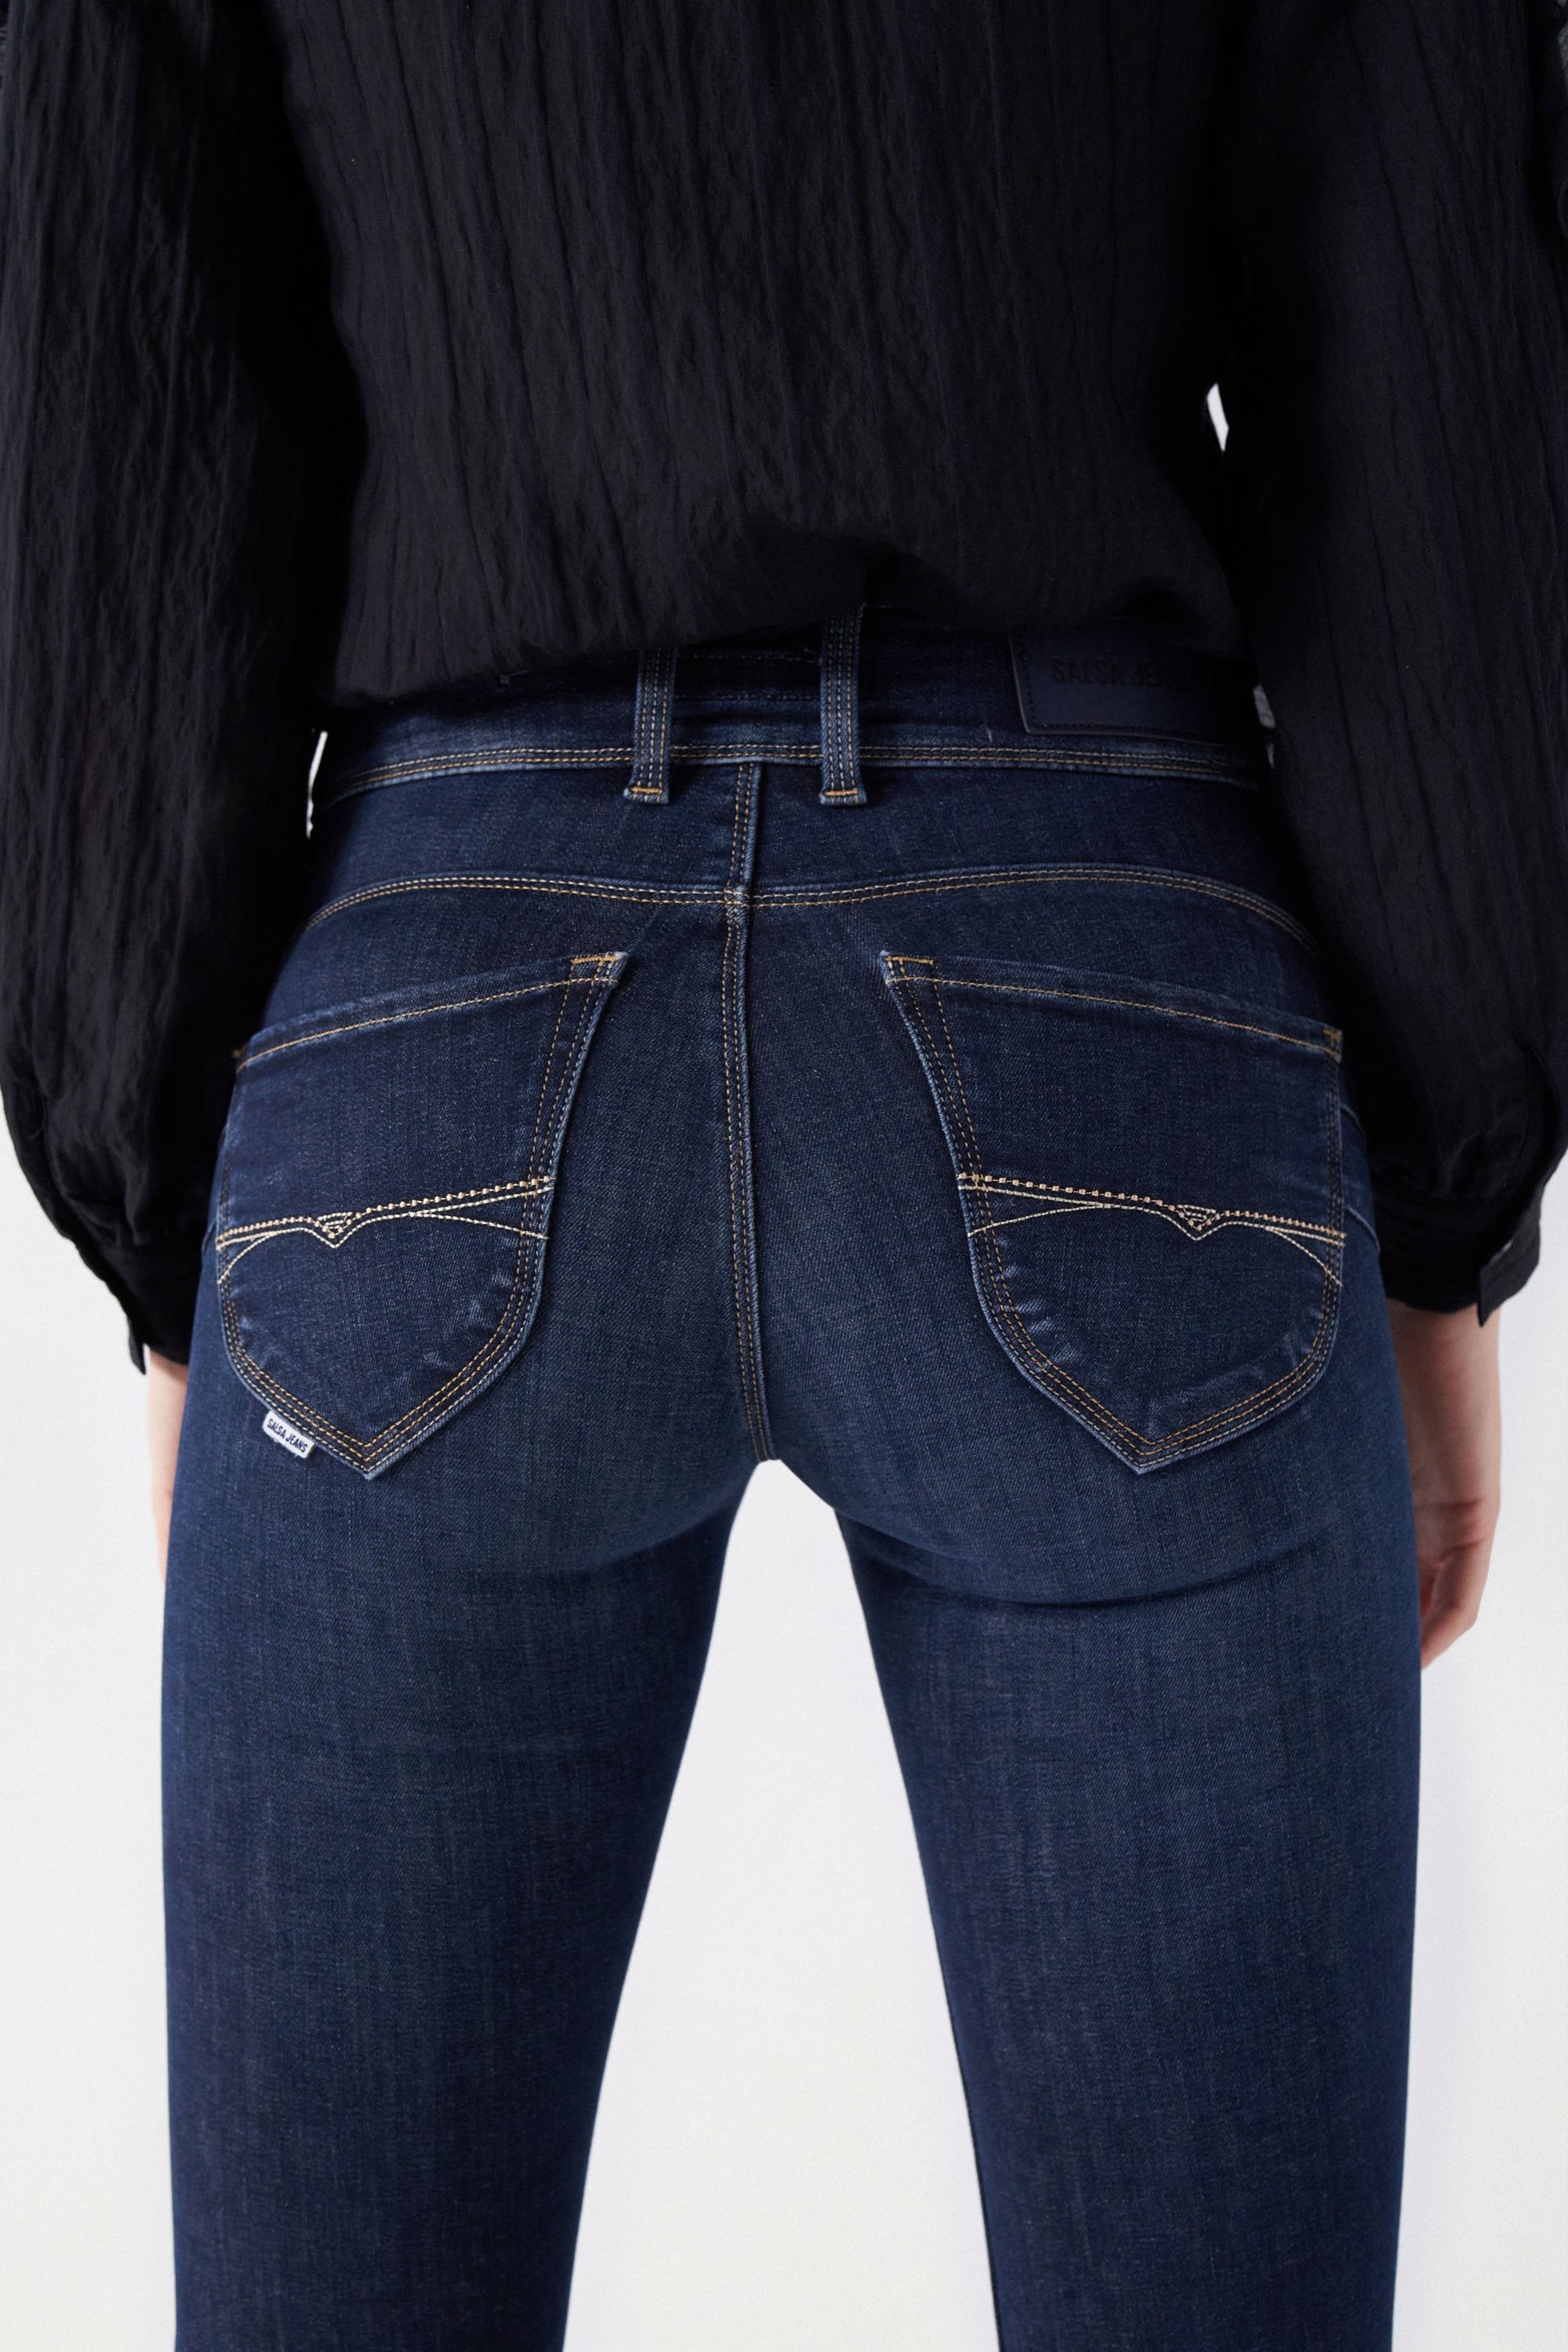 Secret Dark Wash With Detail in Medium Wash Jeans Salsa Jeans   